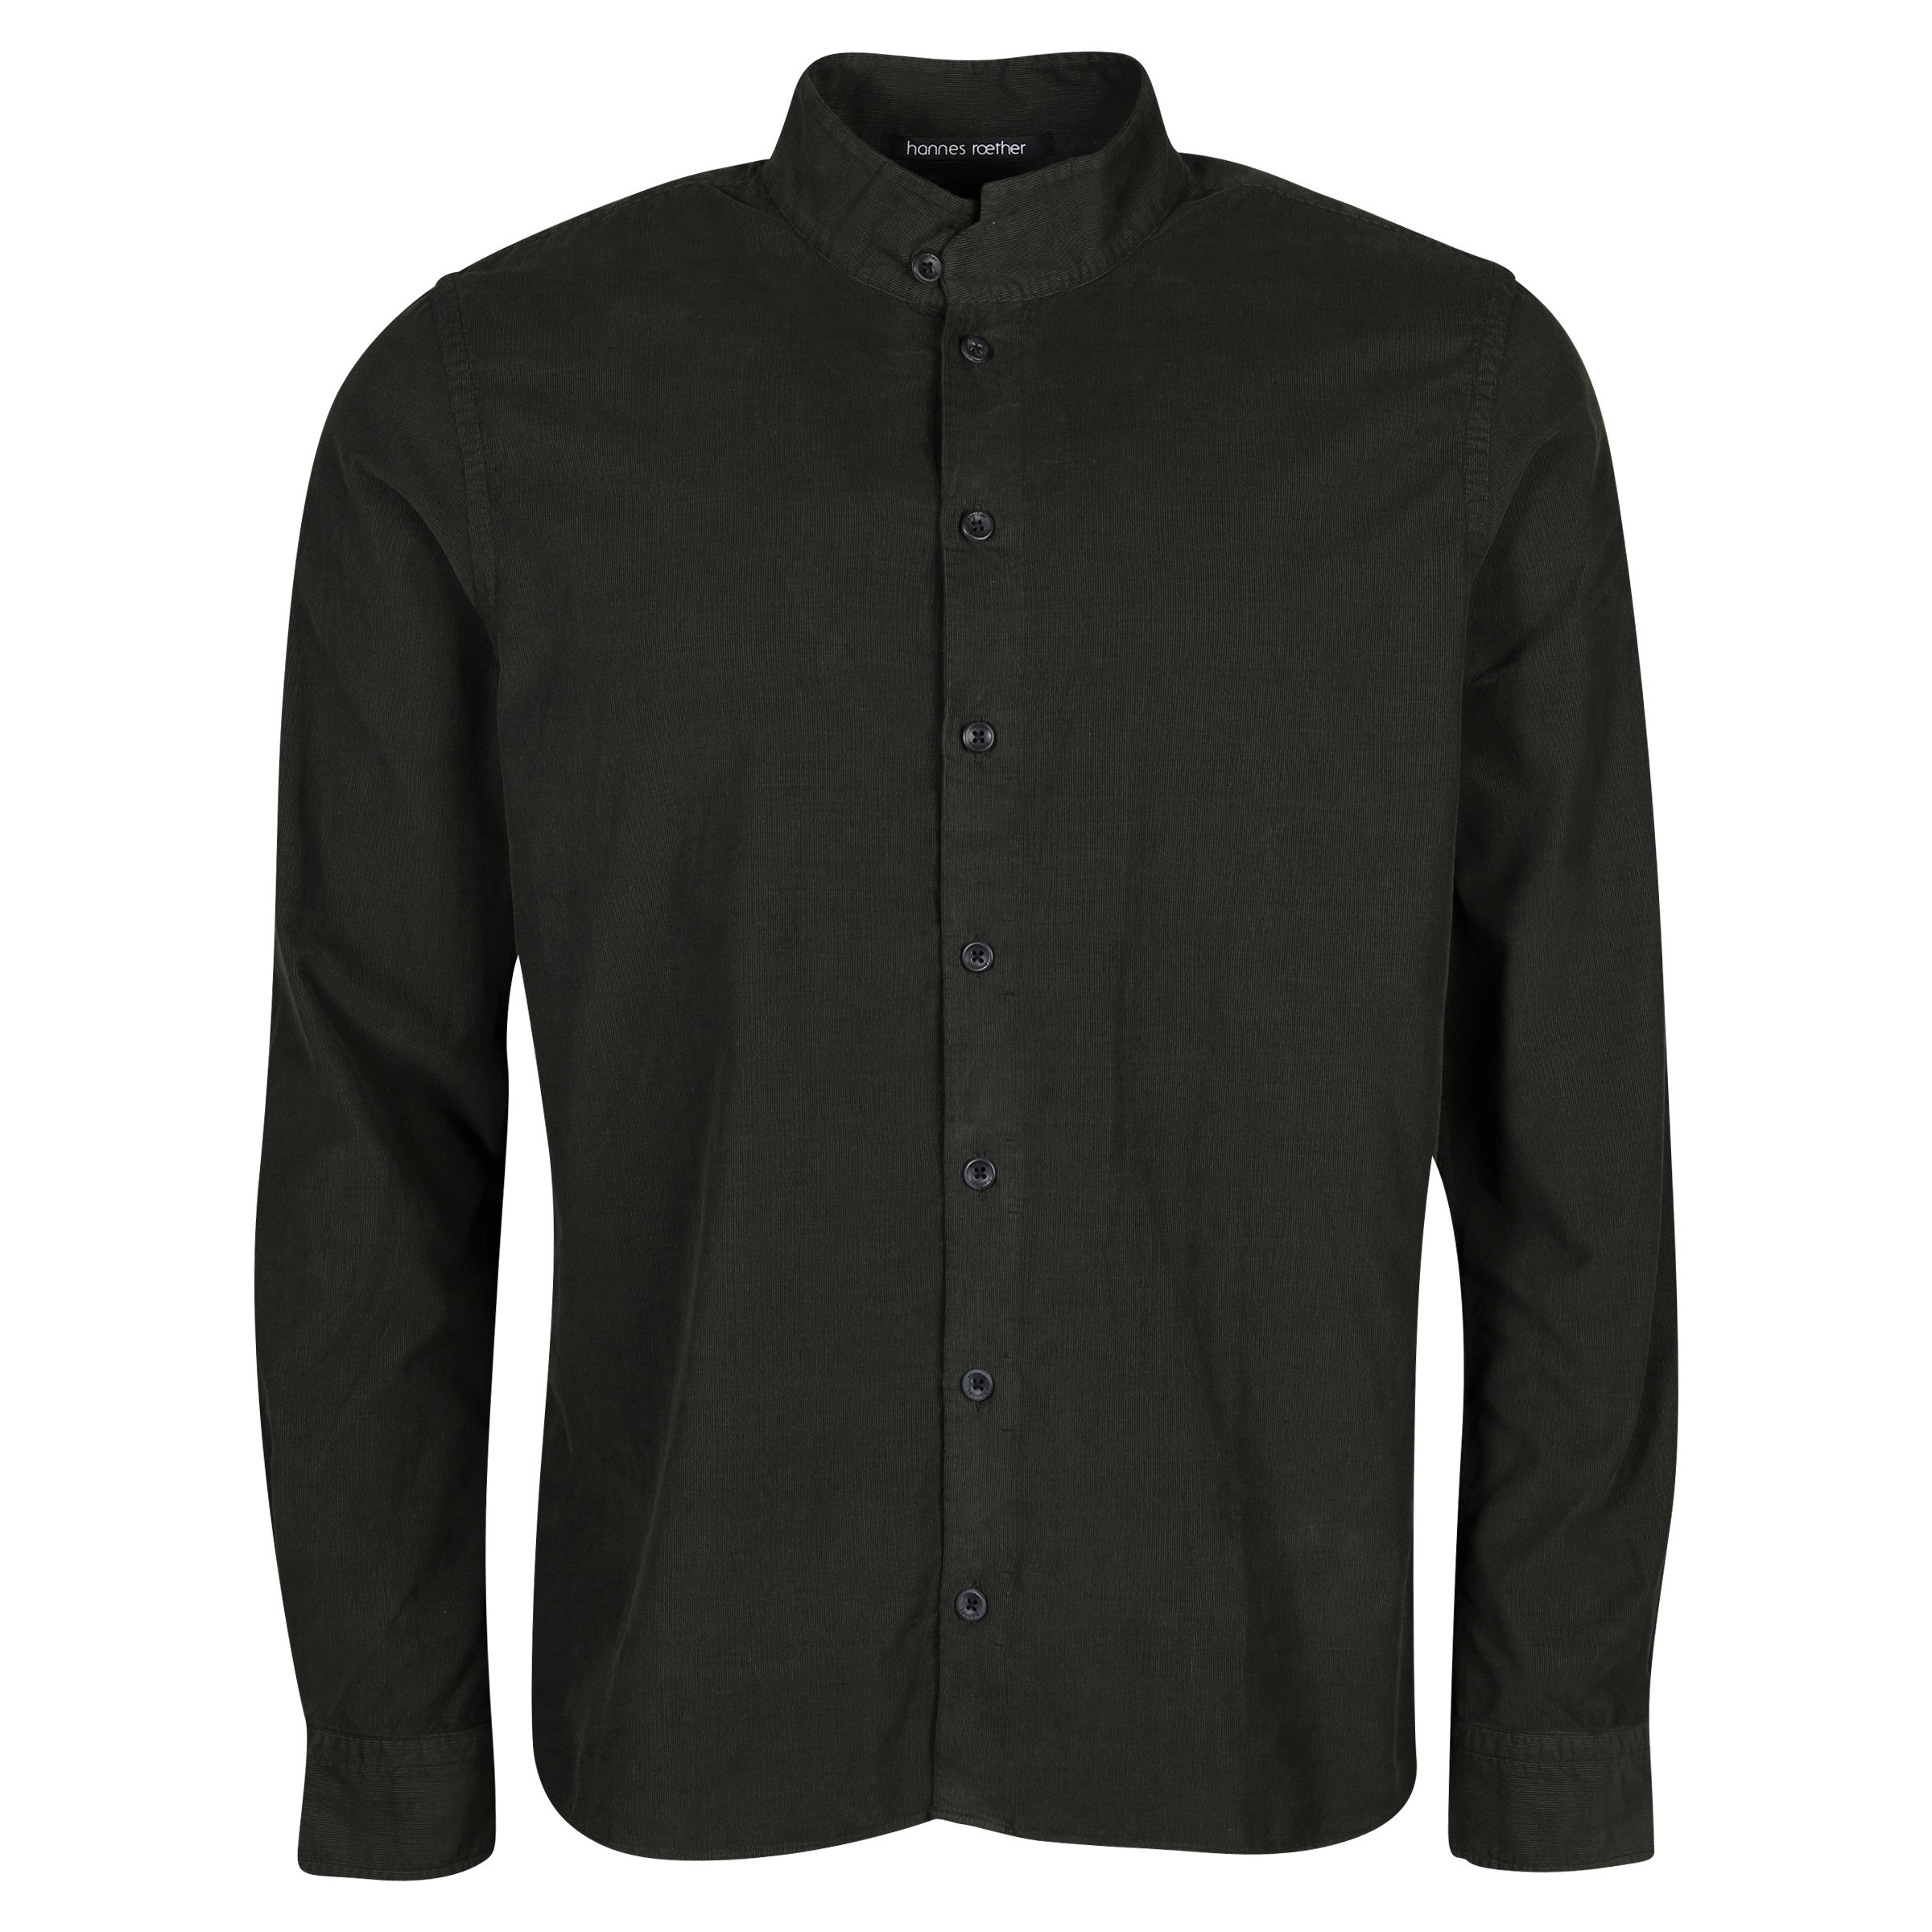 Hannes Roether Fine Corduroy Shirt in Dark Green